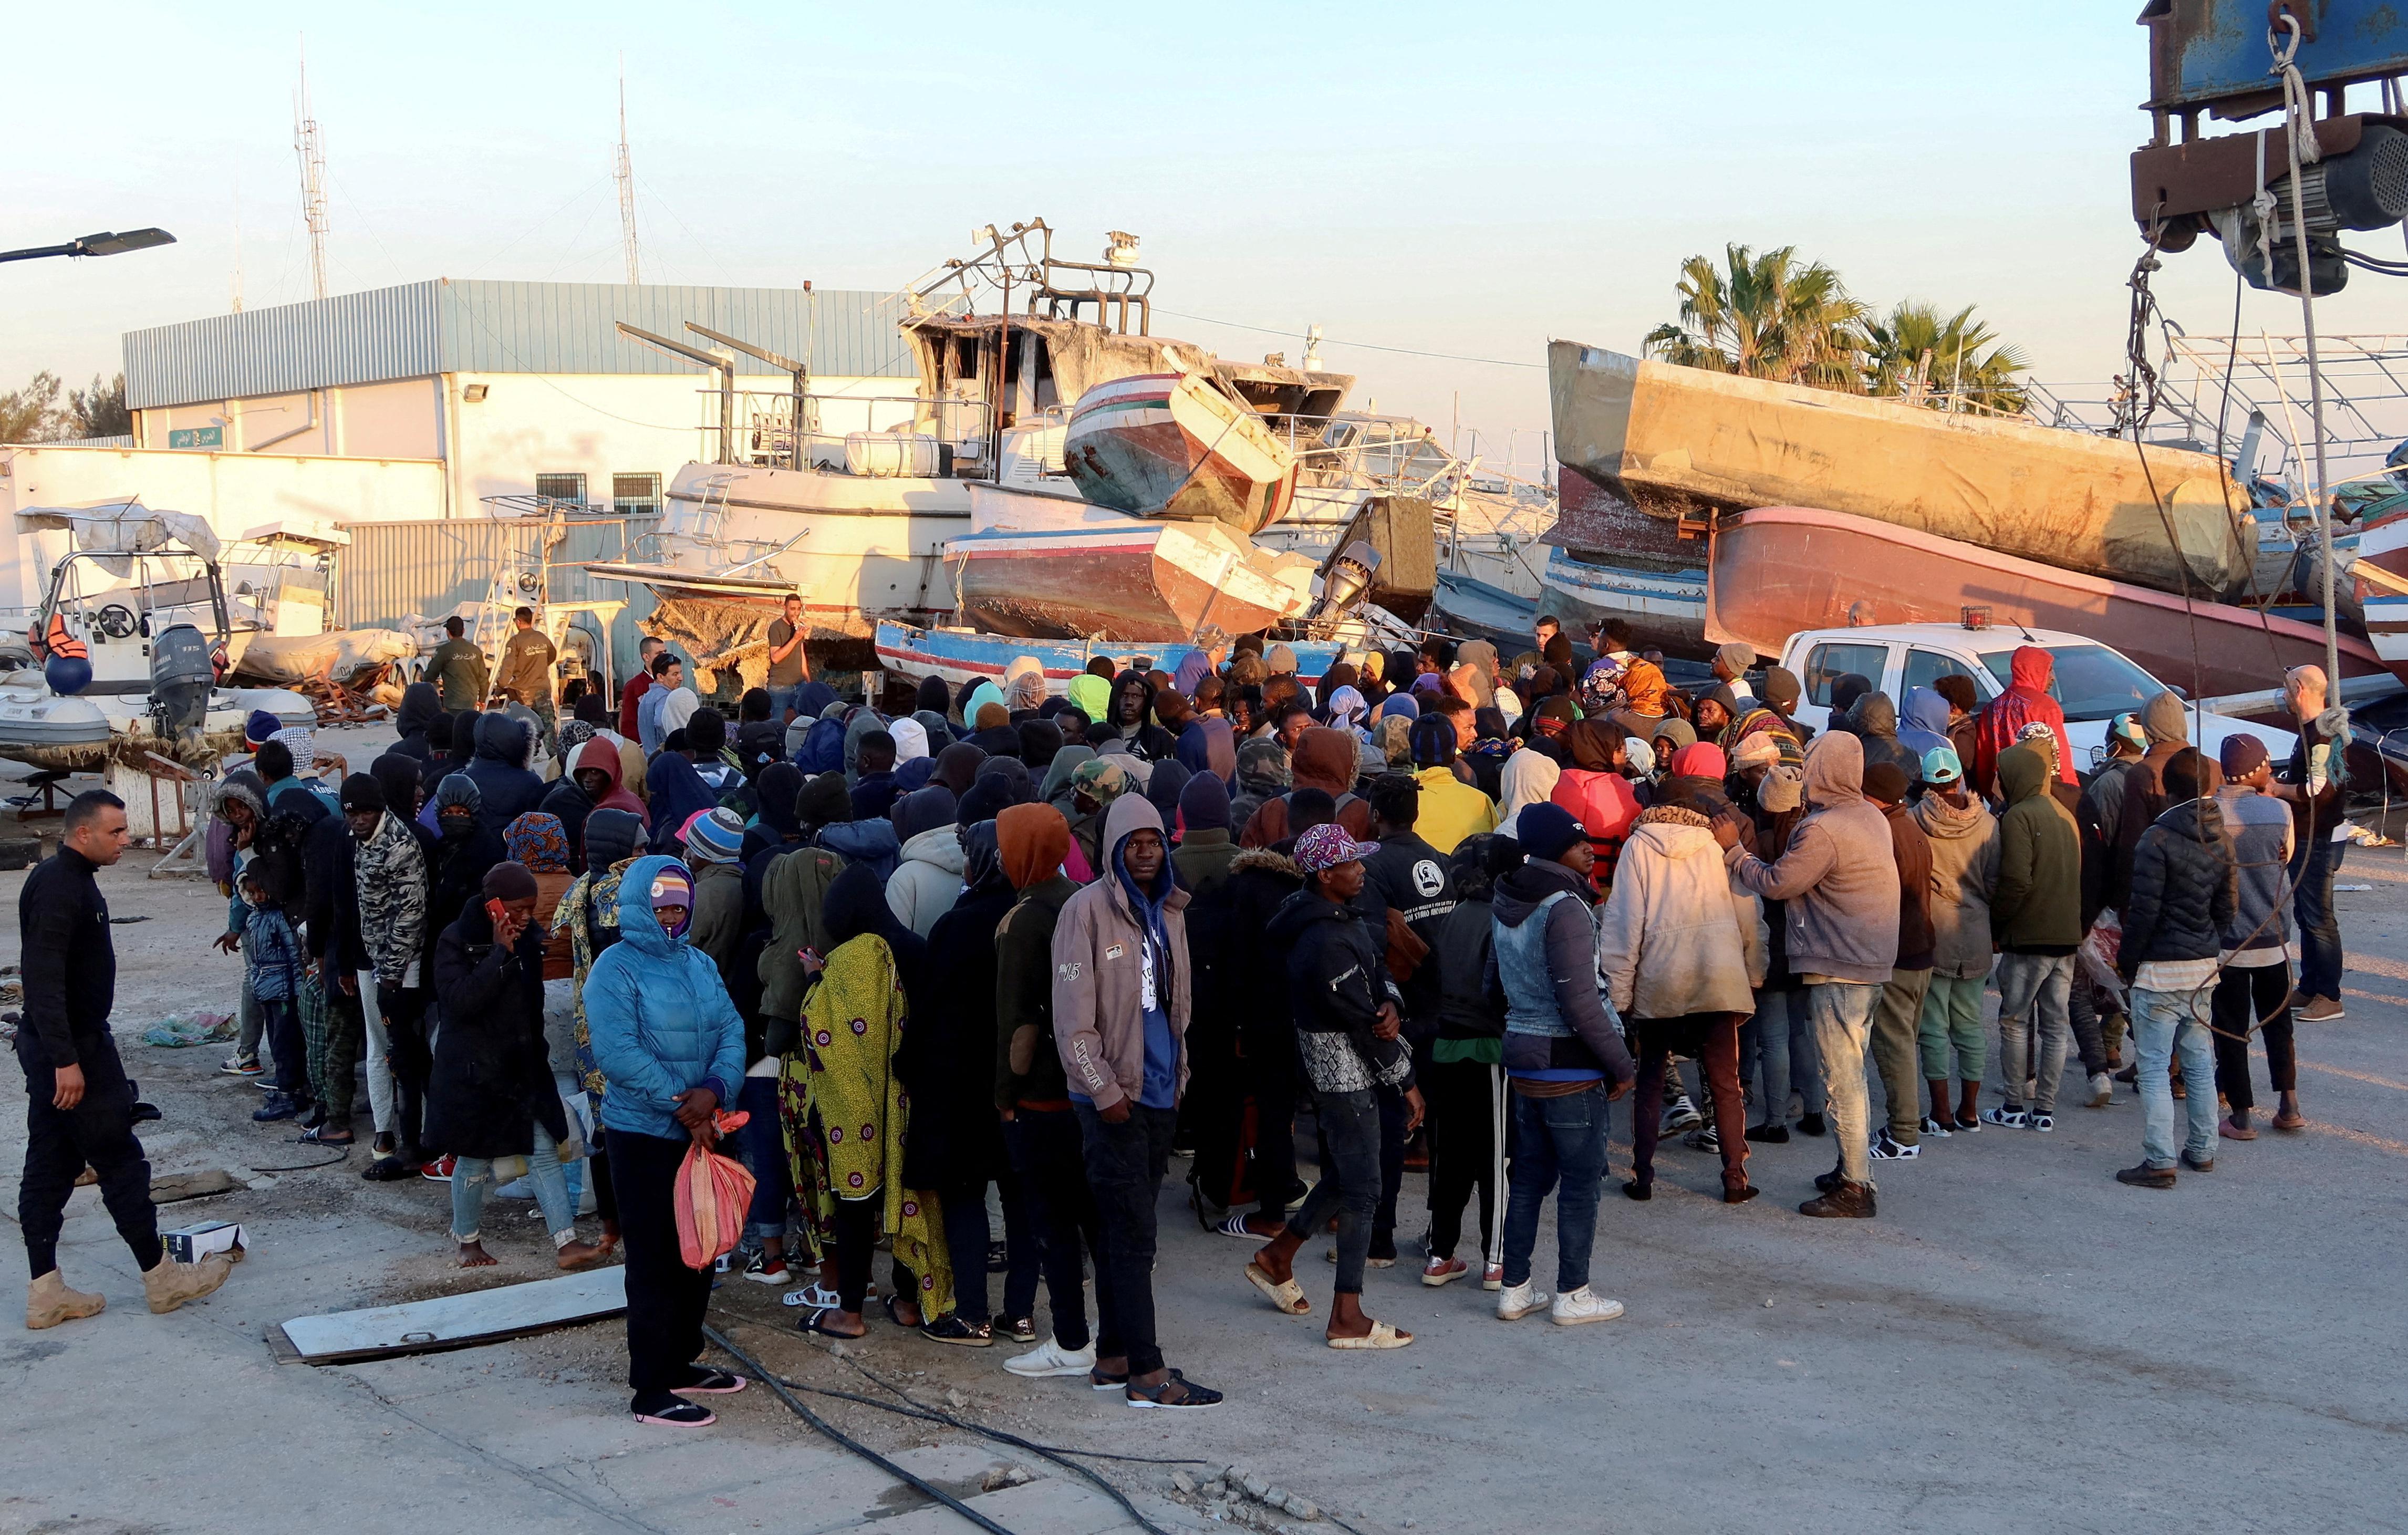  مهاجرون ينتظرون في ميناء صفاقس بعد أن أوقفهم خفر السواحل التونسي في البحر أثناء محاولتهم العبور إلى إيطاليا.